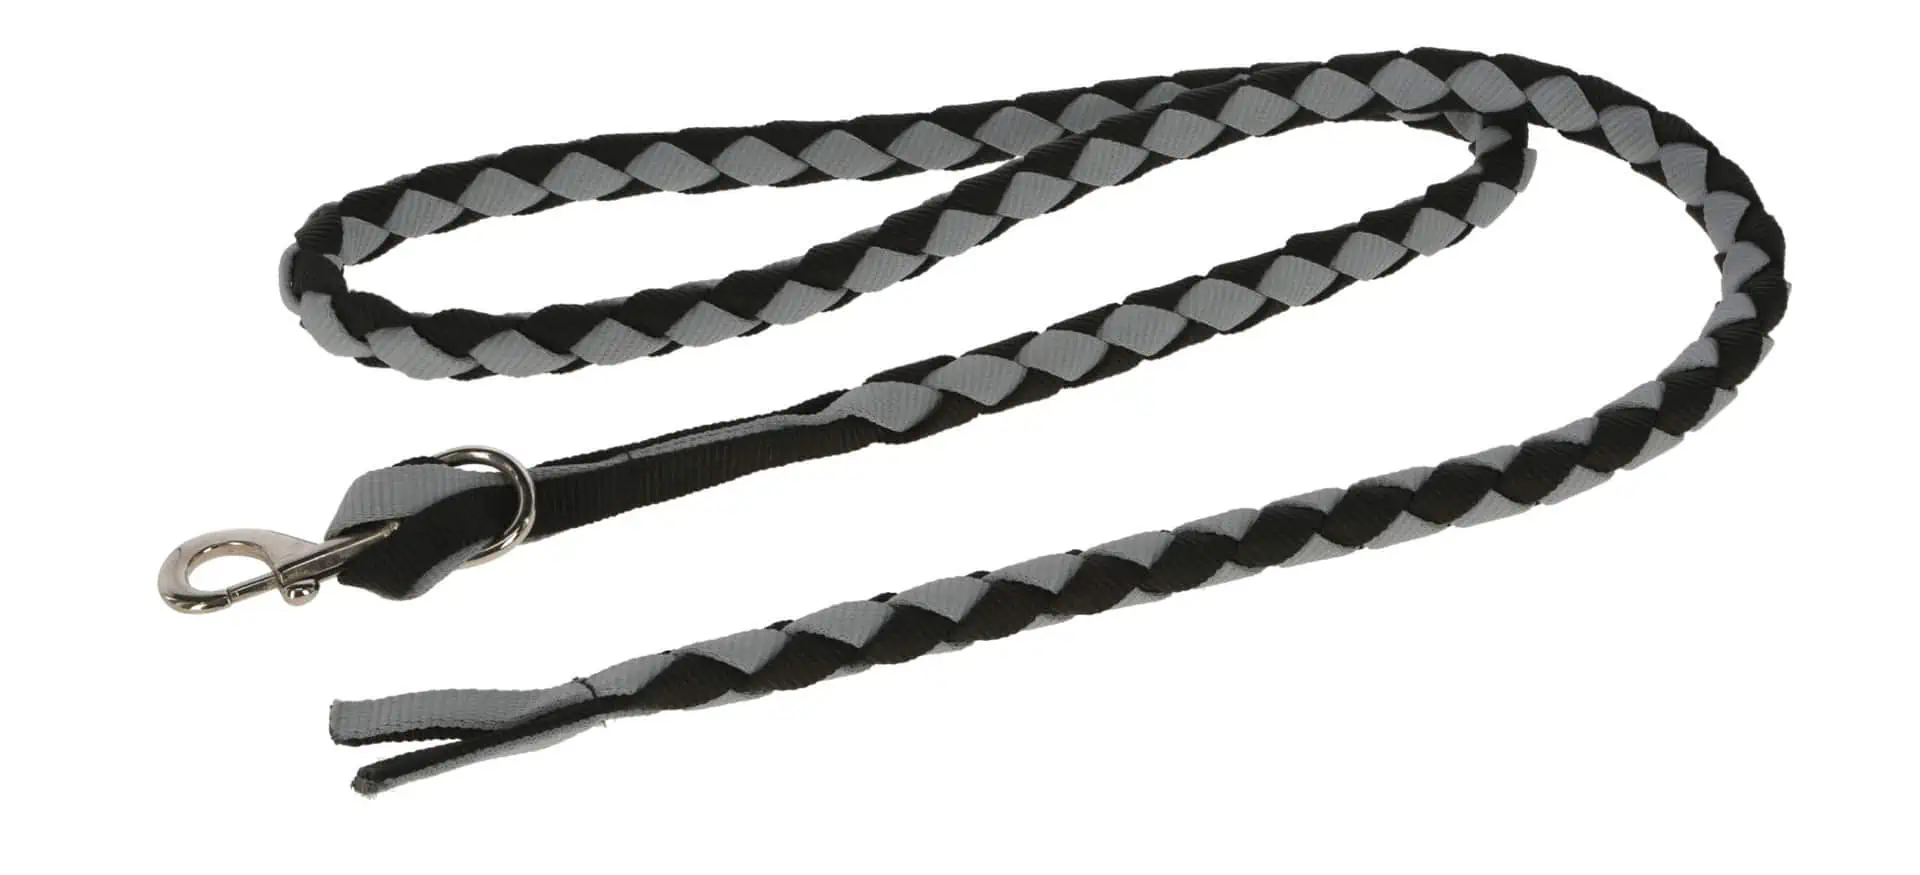 American Lead Rope 2,5 m black/grey